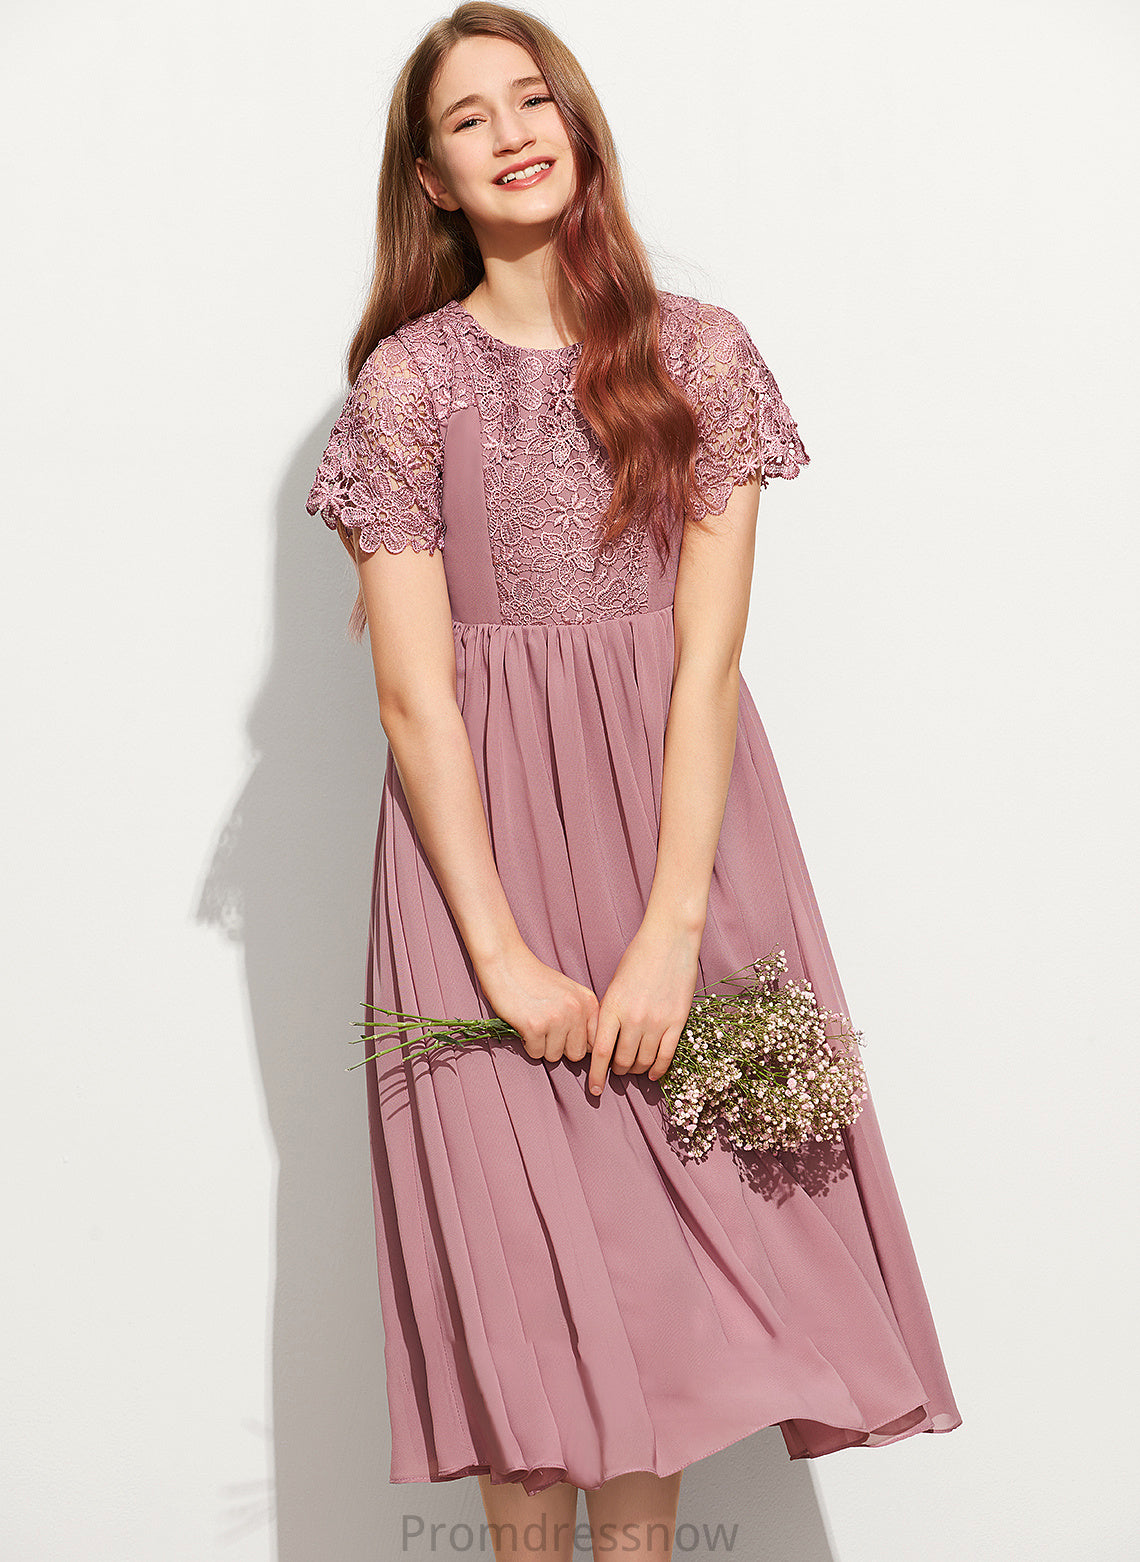 Lace Chiffon Neck Scoop Tea-Length A-Line Junior Bridesmaid Dresses Gwen